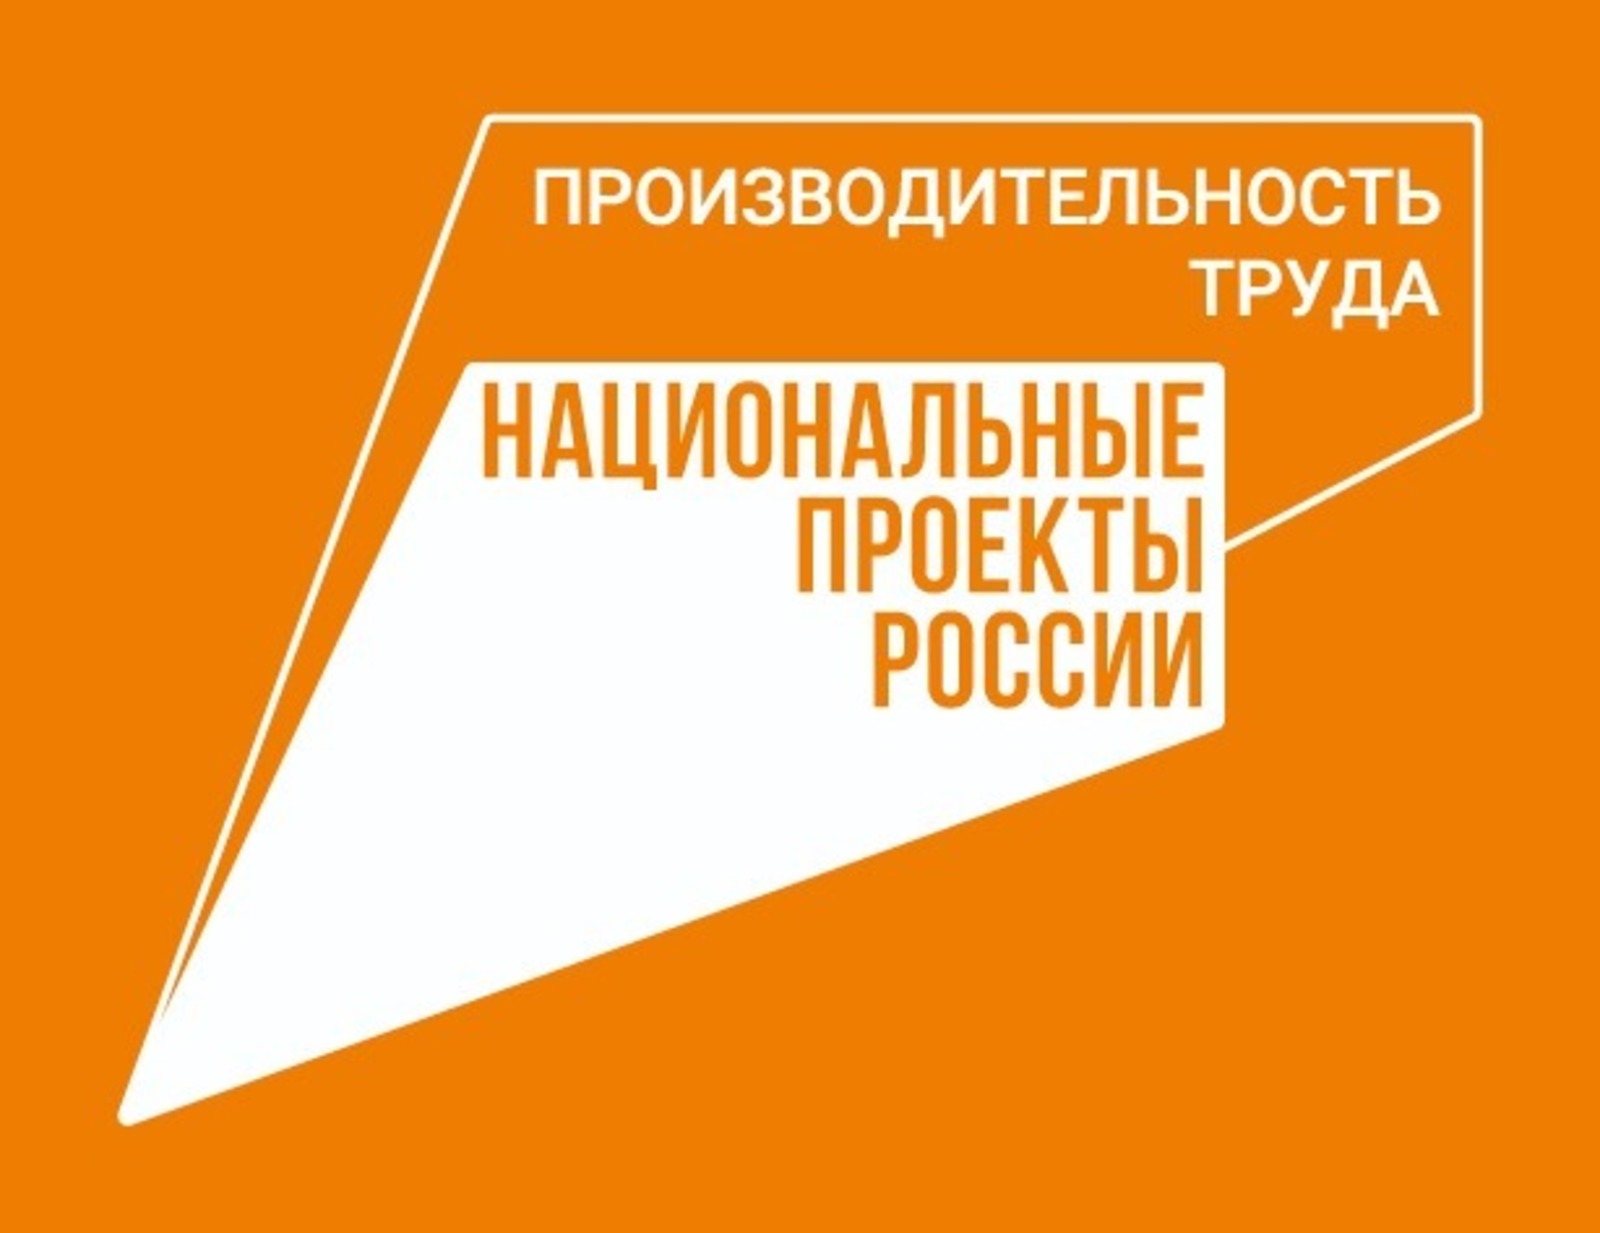 В Башкортостане экономический эффект от нацпроекта «Производительность труда» превысил 1,5 млрд рублей